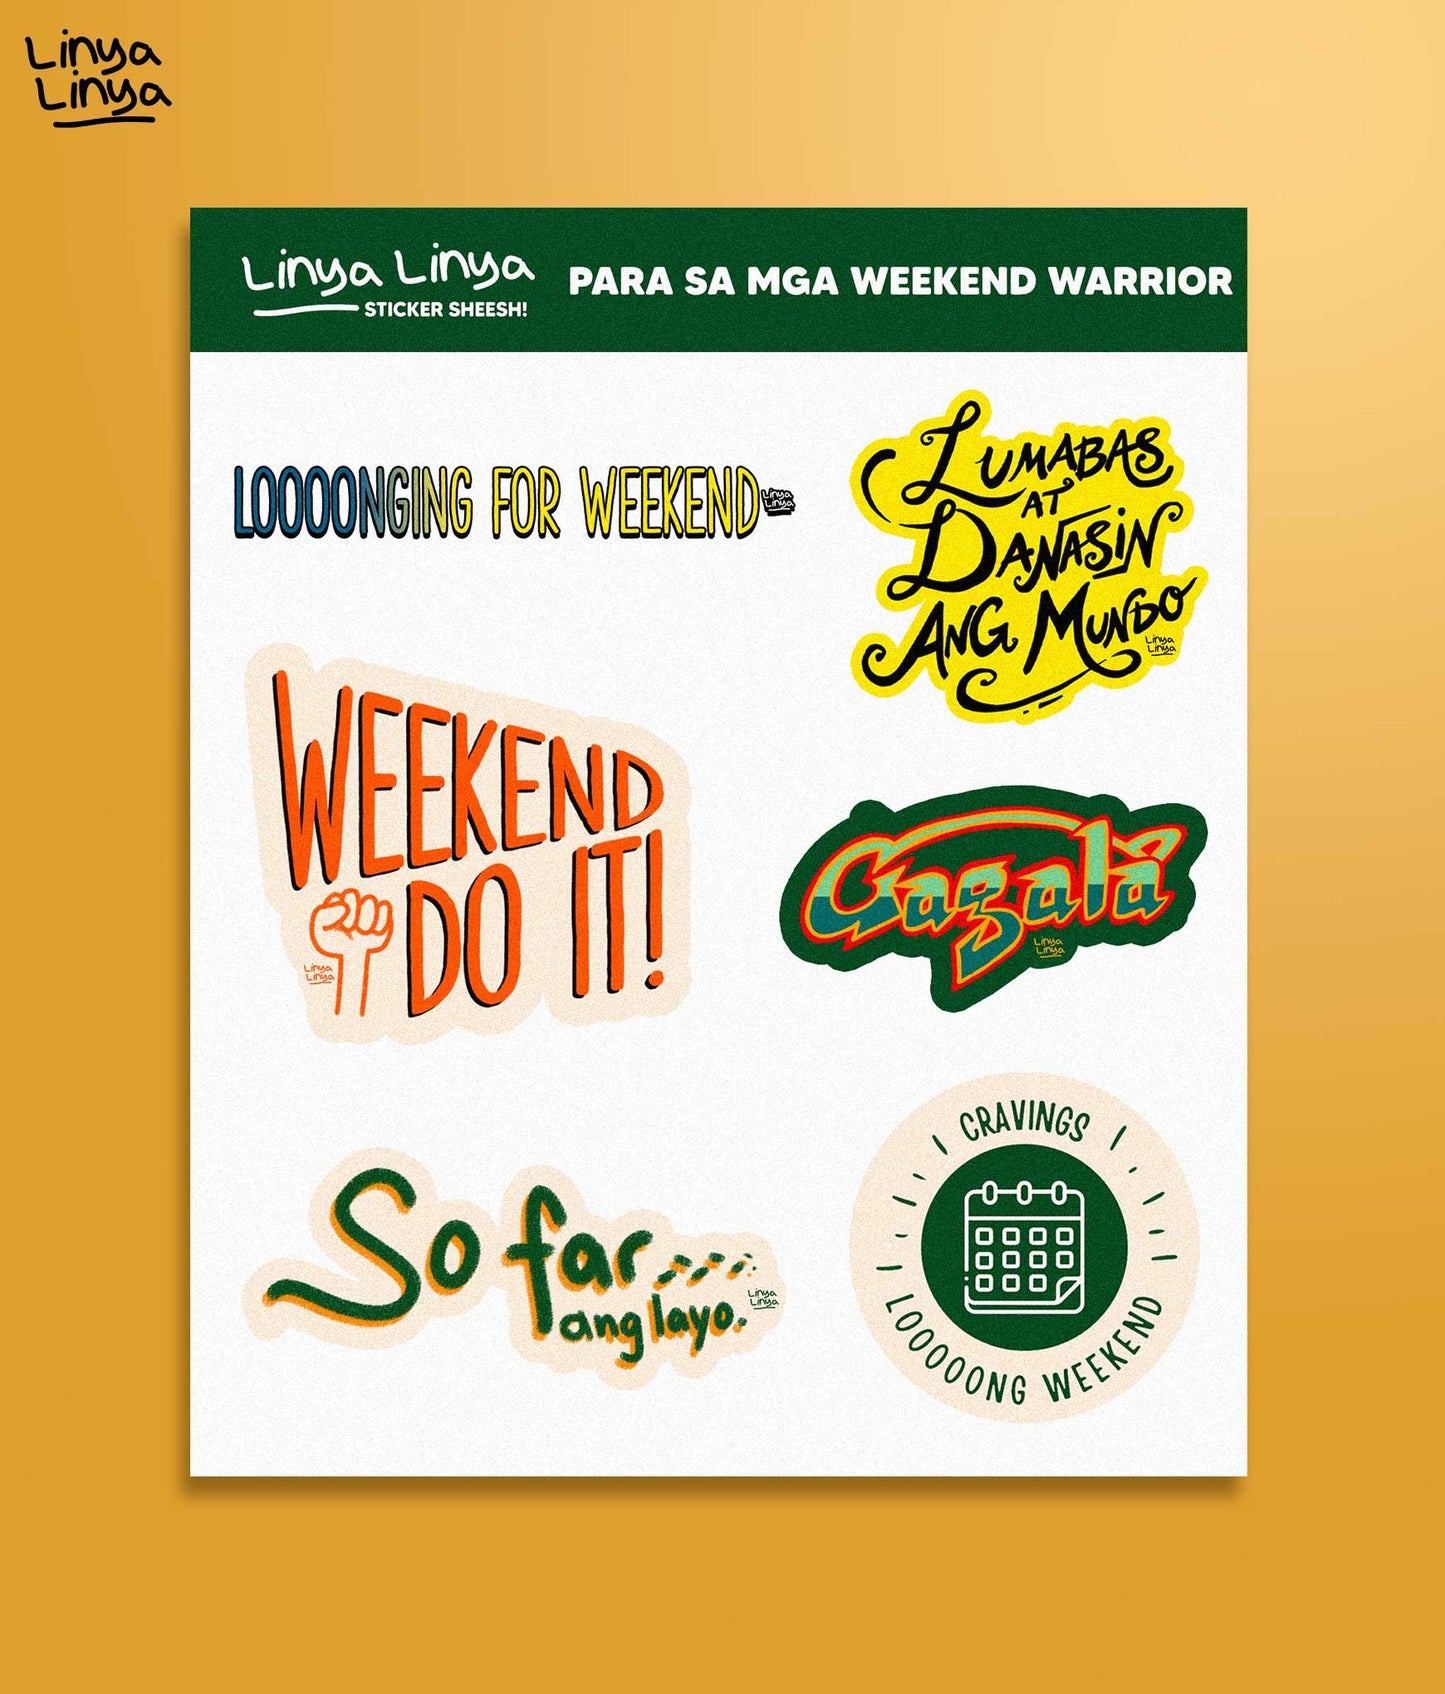 Linya-Linya Sticker Packs: Para Sa Mga Weekend Warrior